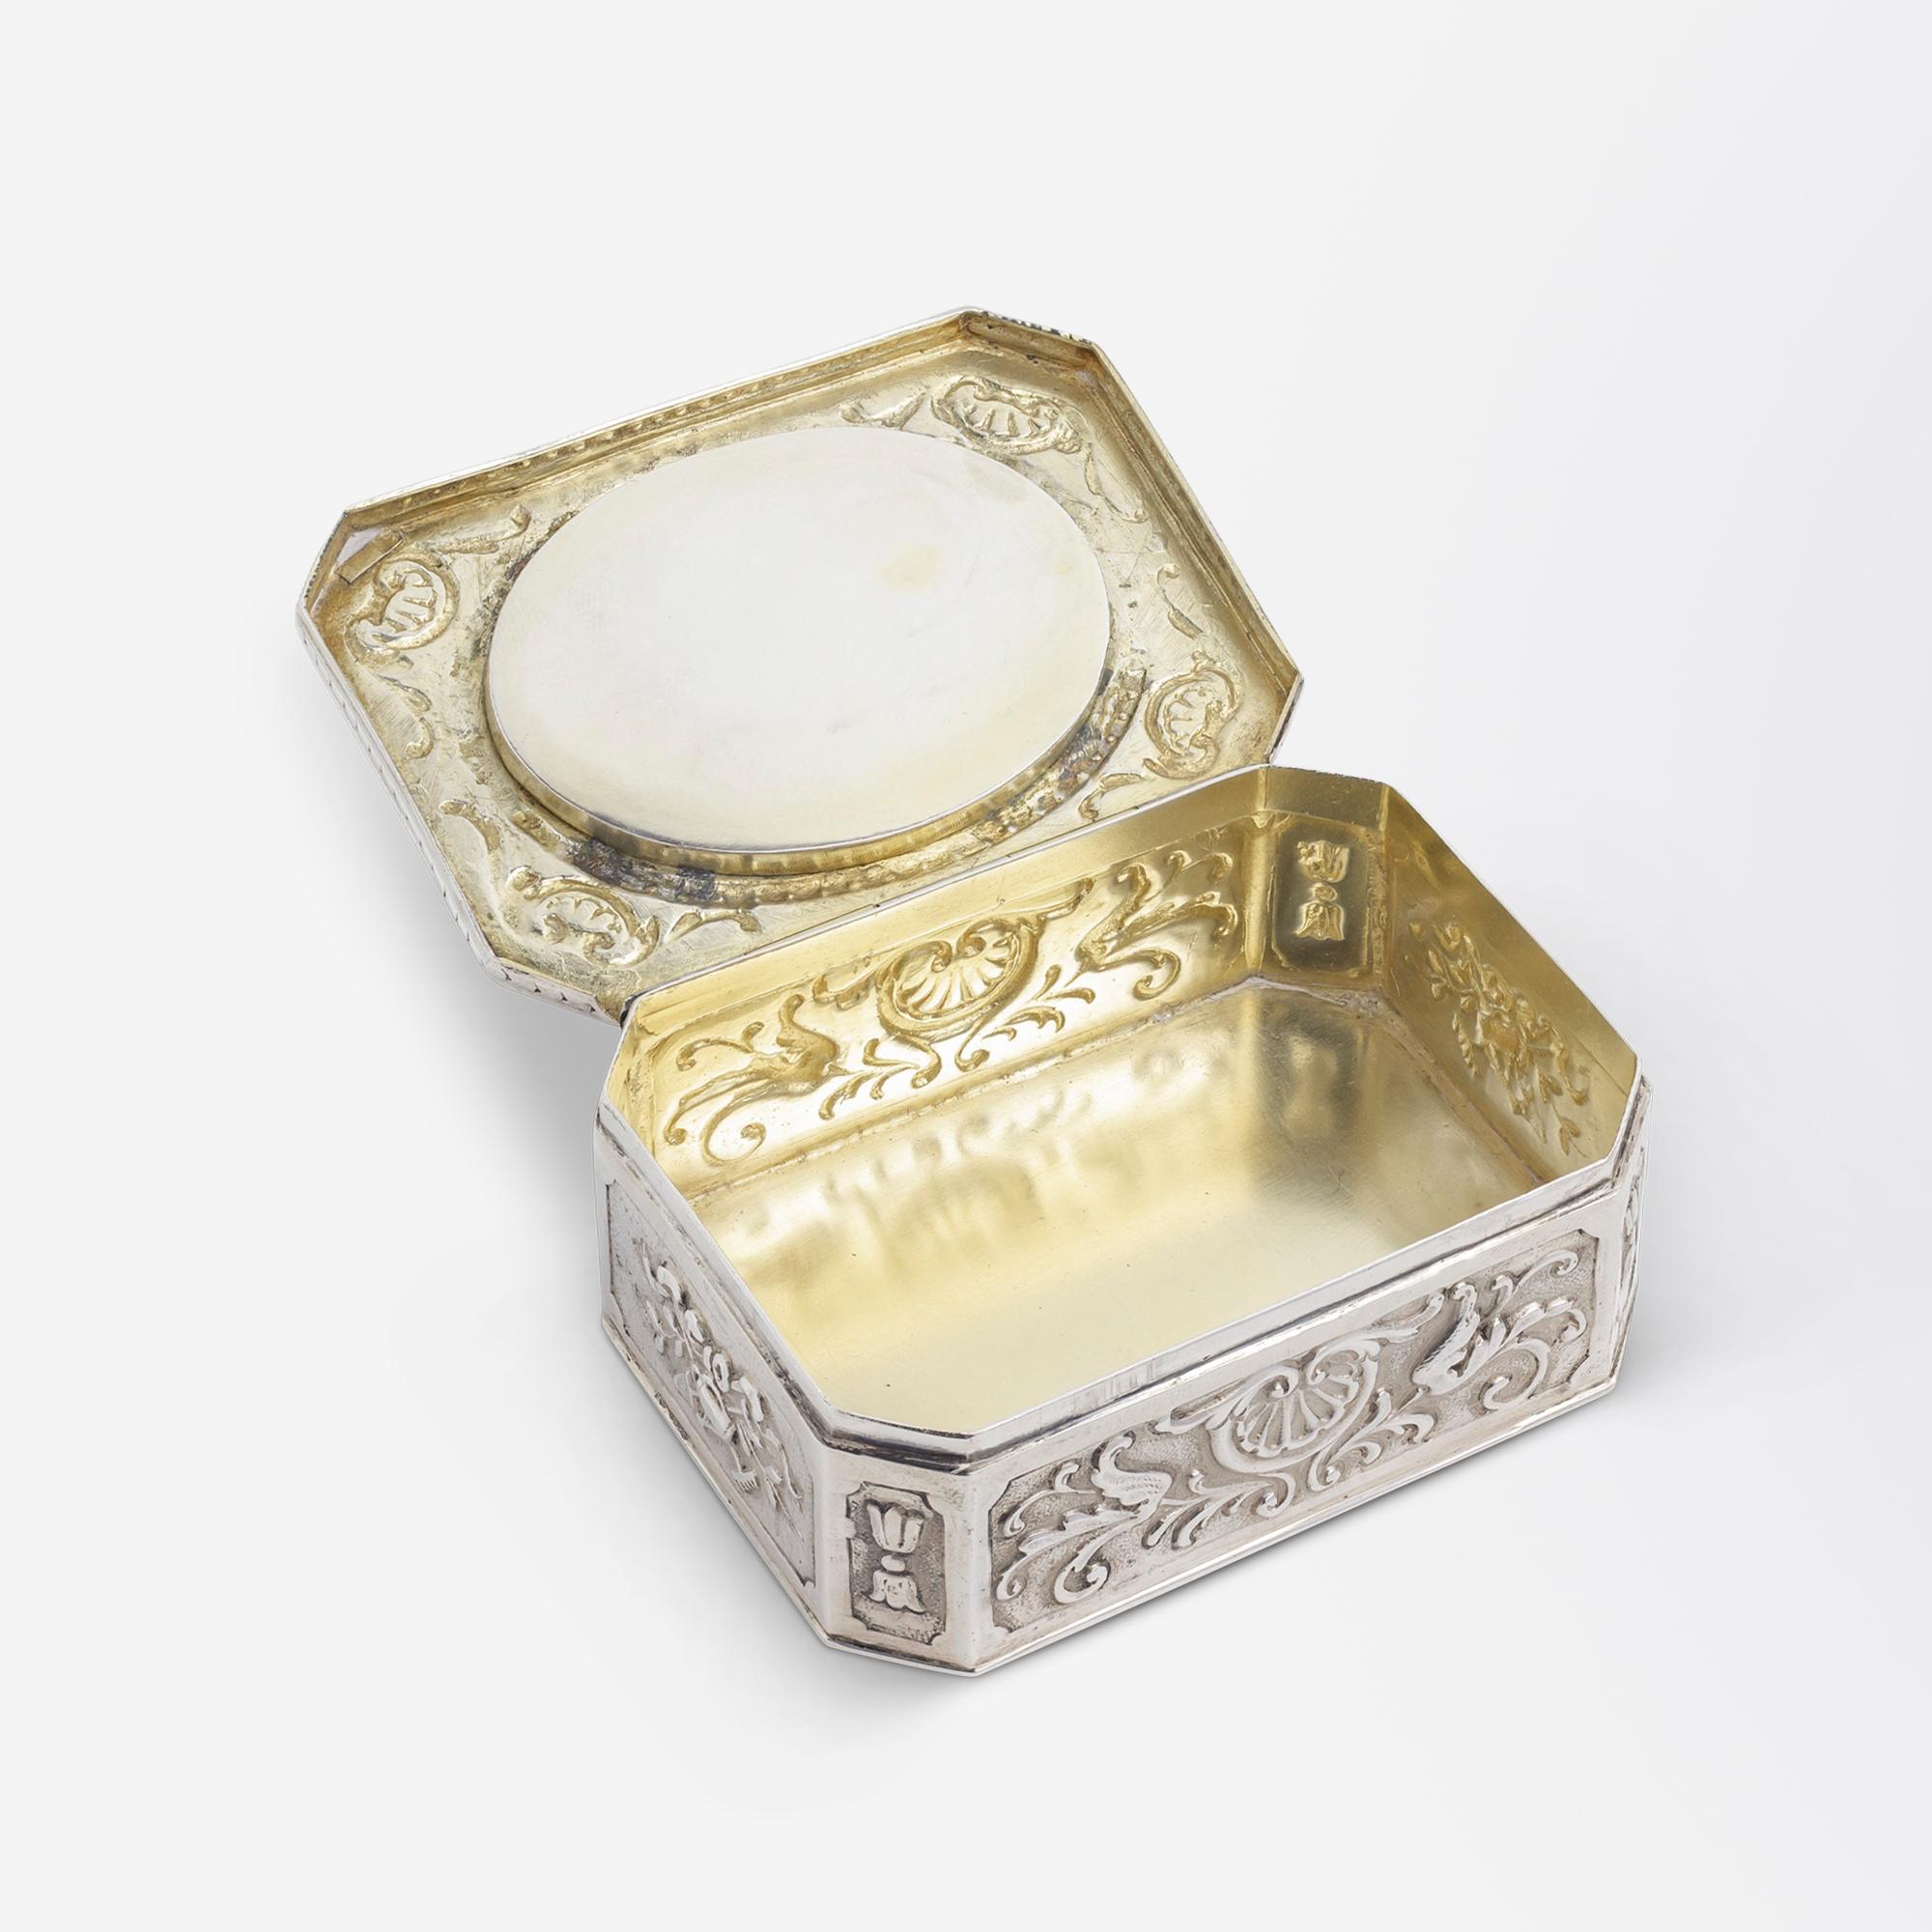 Cette charmante boîte, qui date du début du siècle, a été fabriquée en argent pur 800 et décorée d'émaux. Cette pièce, de forme octogonale, provient d'Allemagne et a été réalisée avec des détails de repoussage ornés. Au centre de la partie